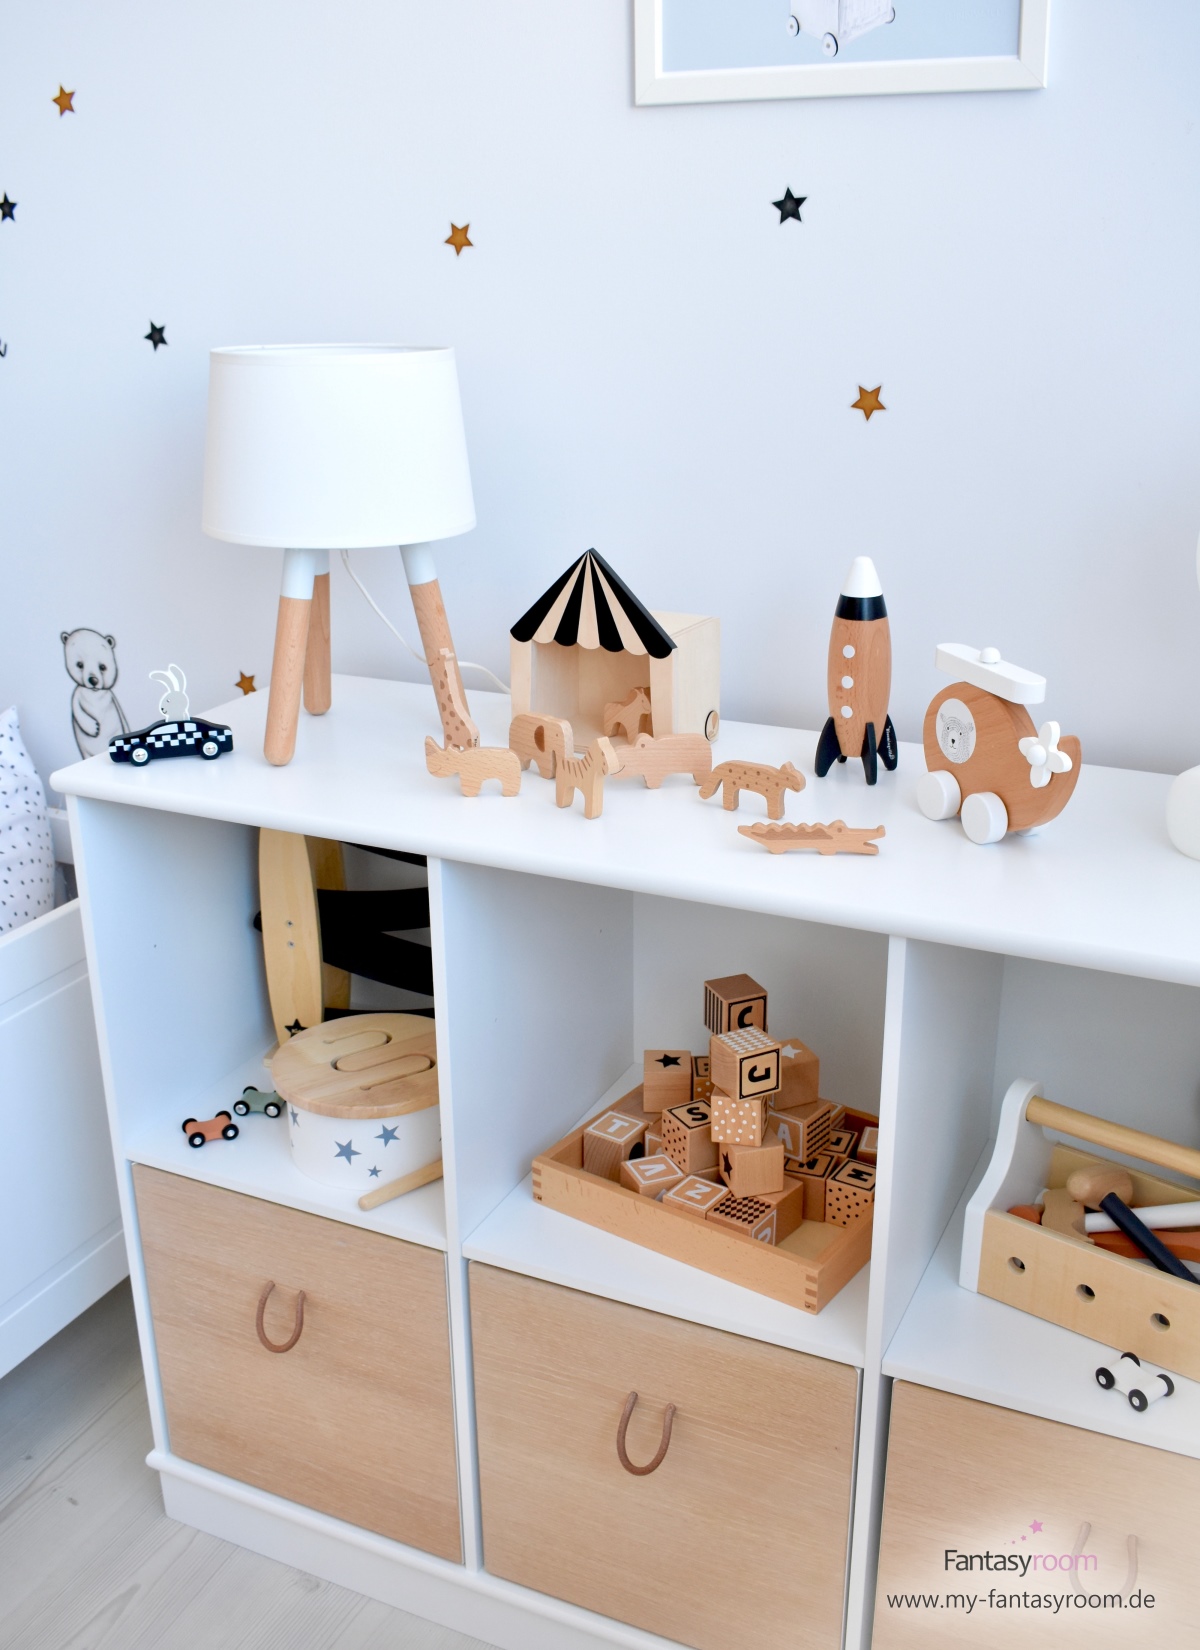 Offenes Spielzeugregal 'Wood' von Oliver Furniture mit passenden Kisten und schönem Holzspielzeug